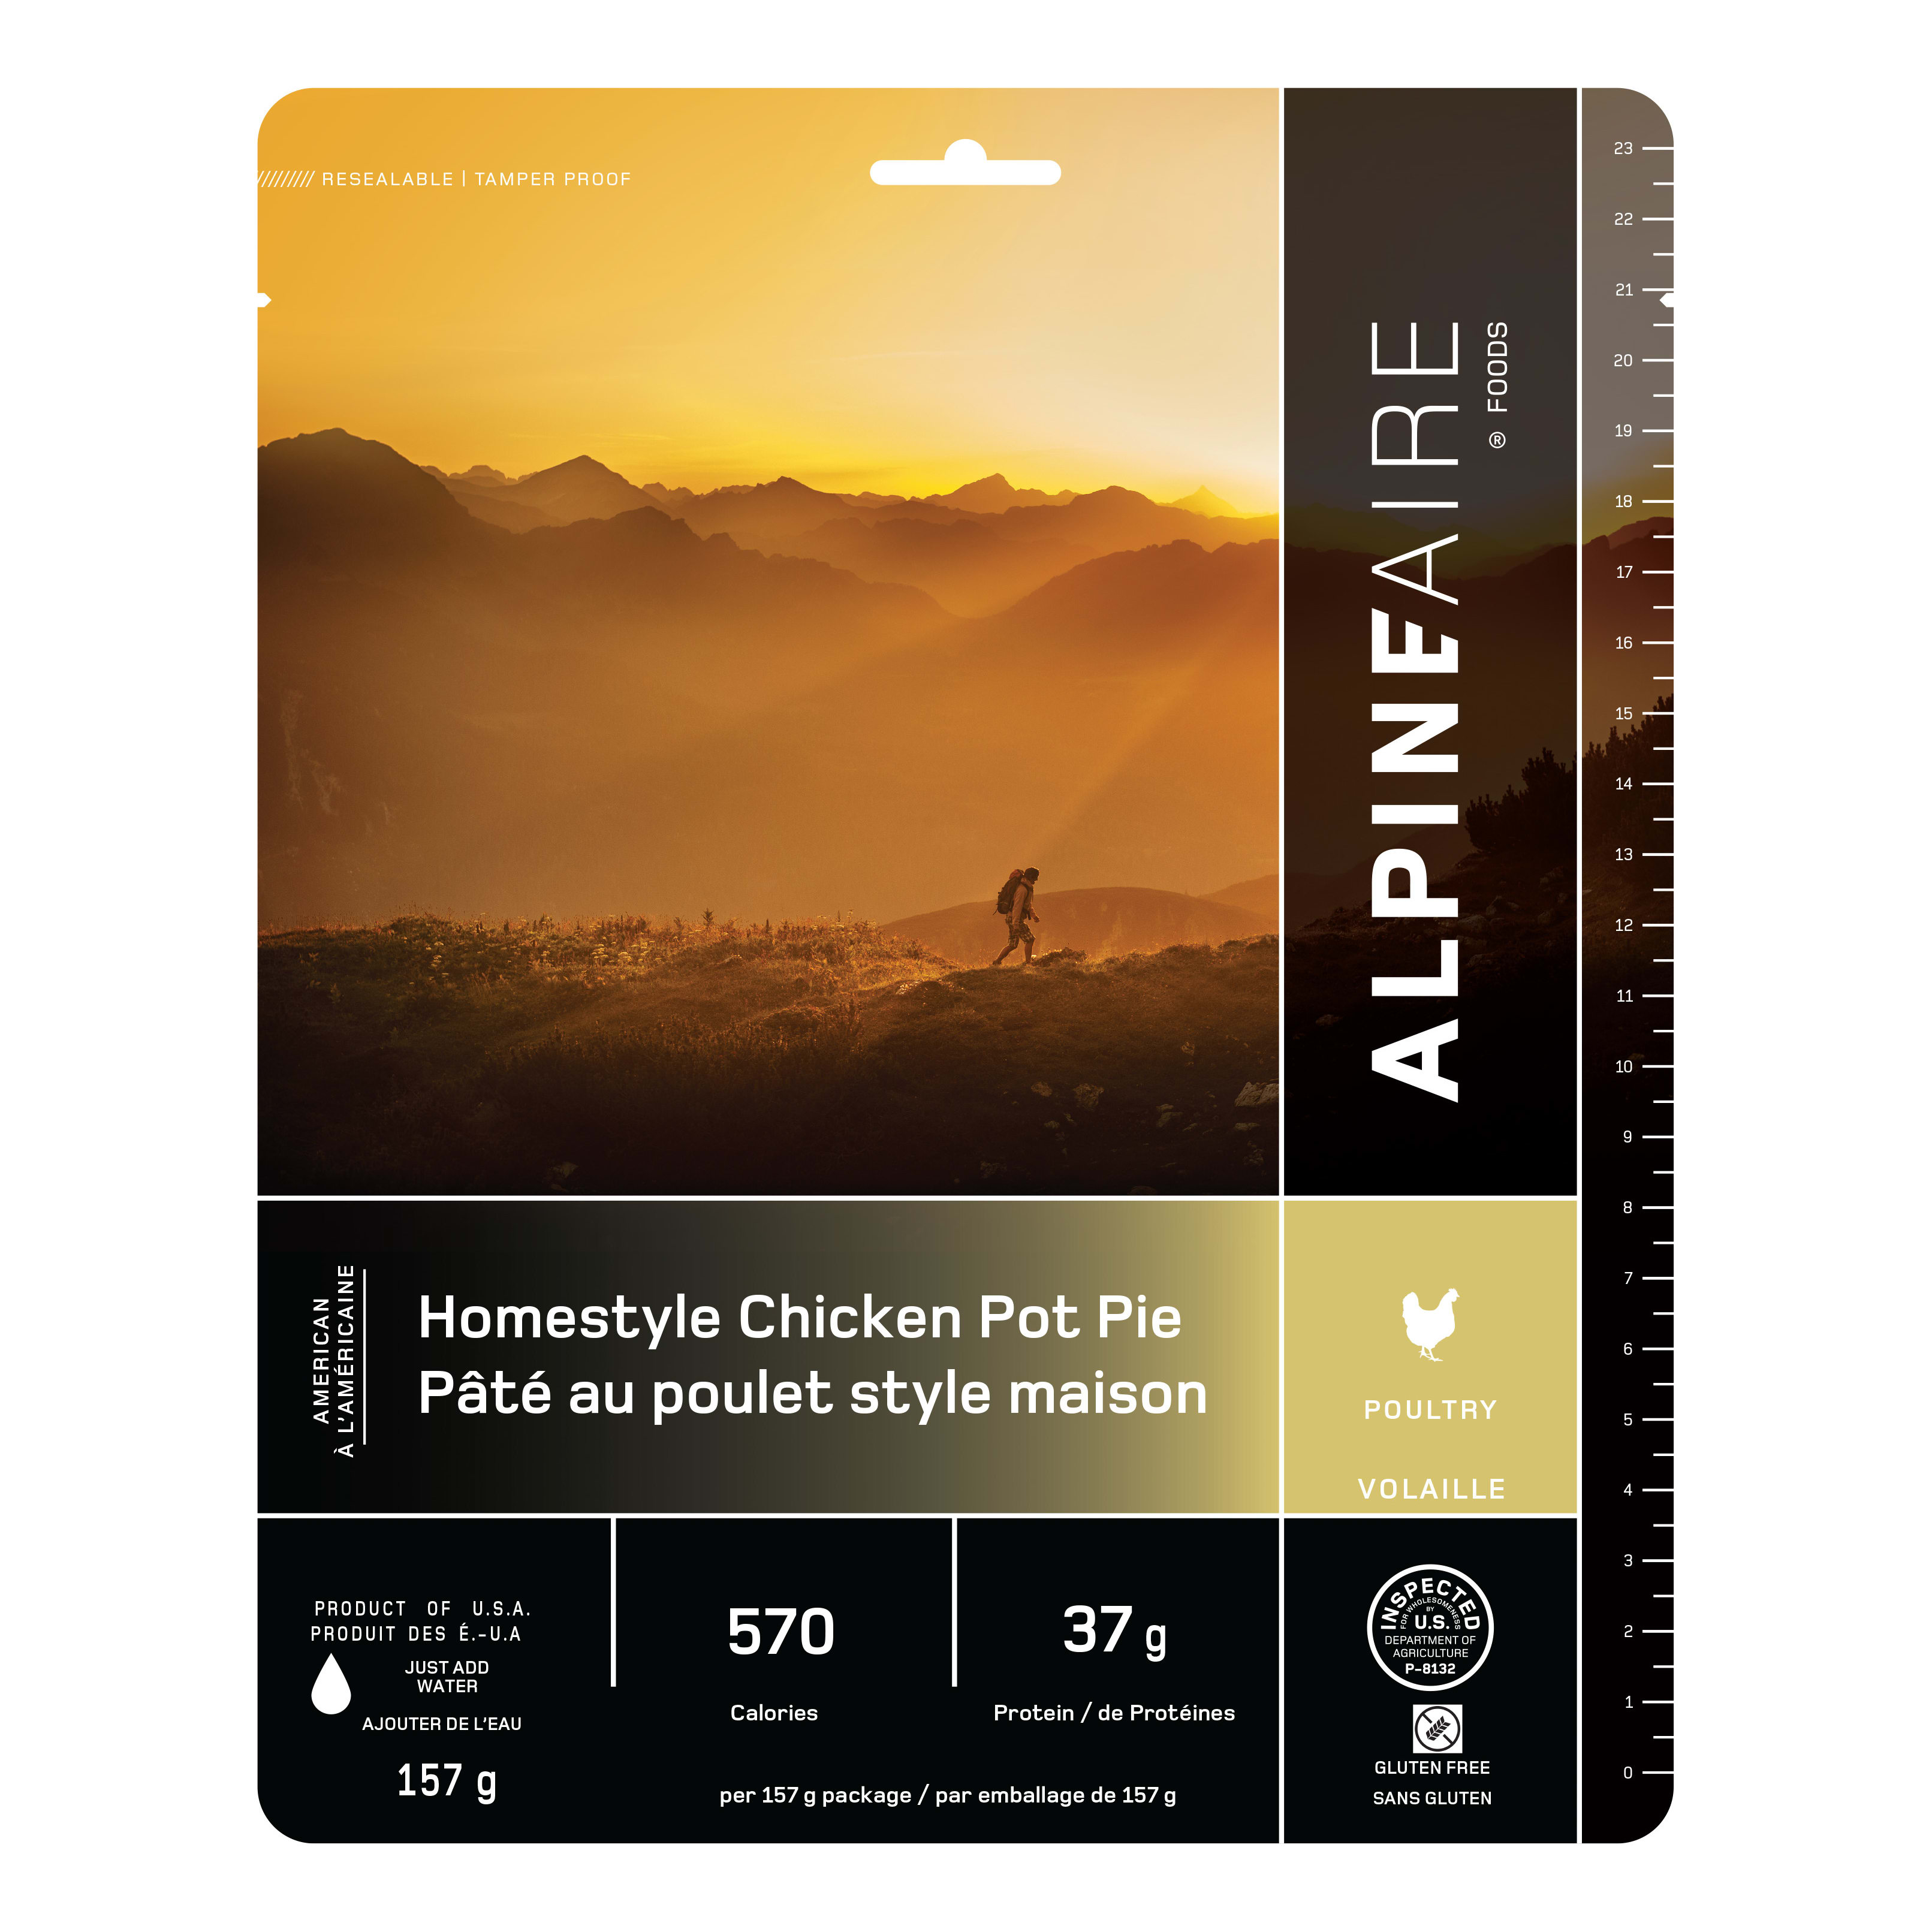 AlpineAire® Homestyle Chicken Pot Pie